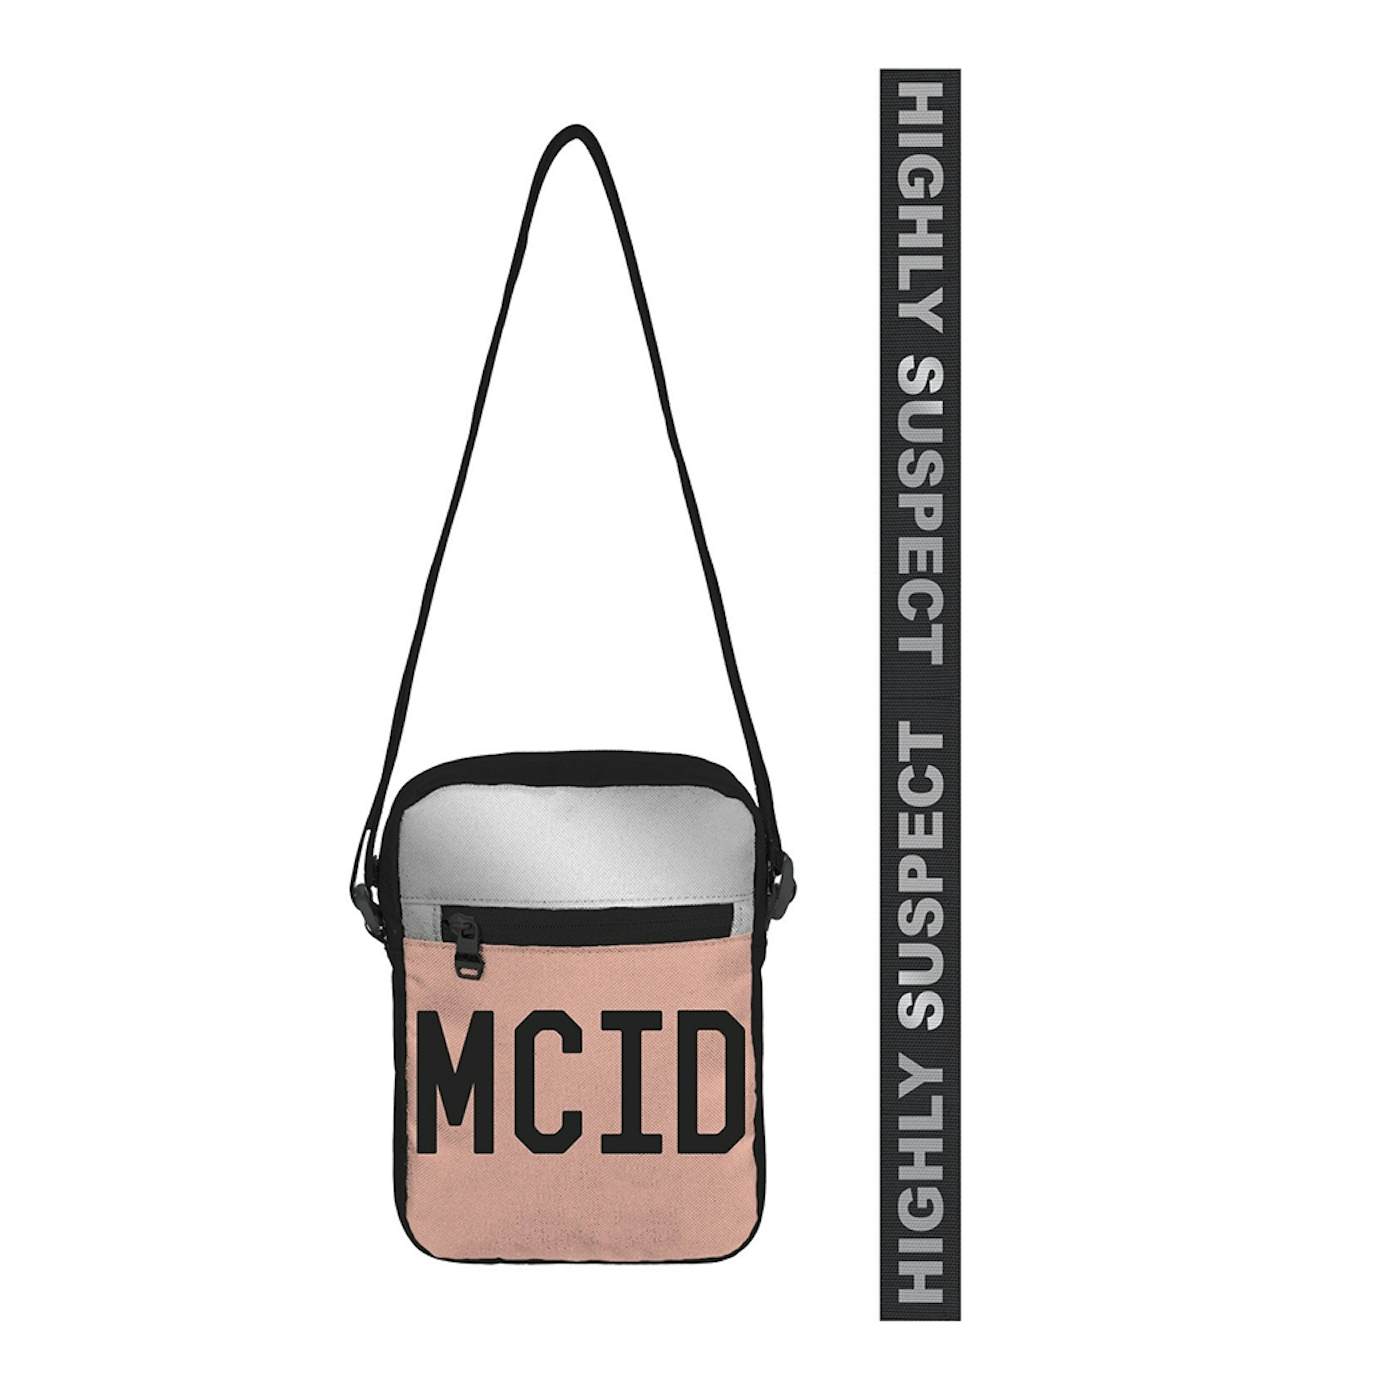 Highly Suspect MCID Side Bag